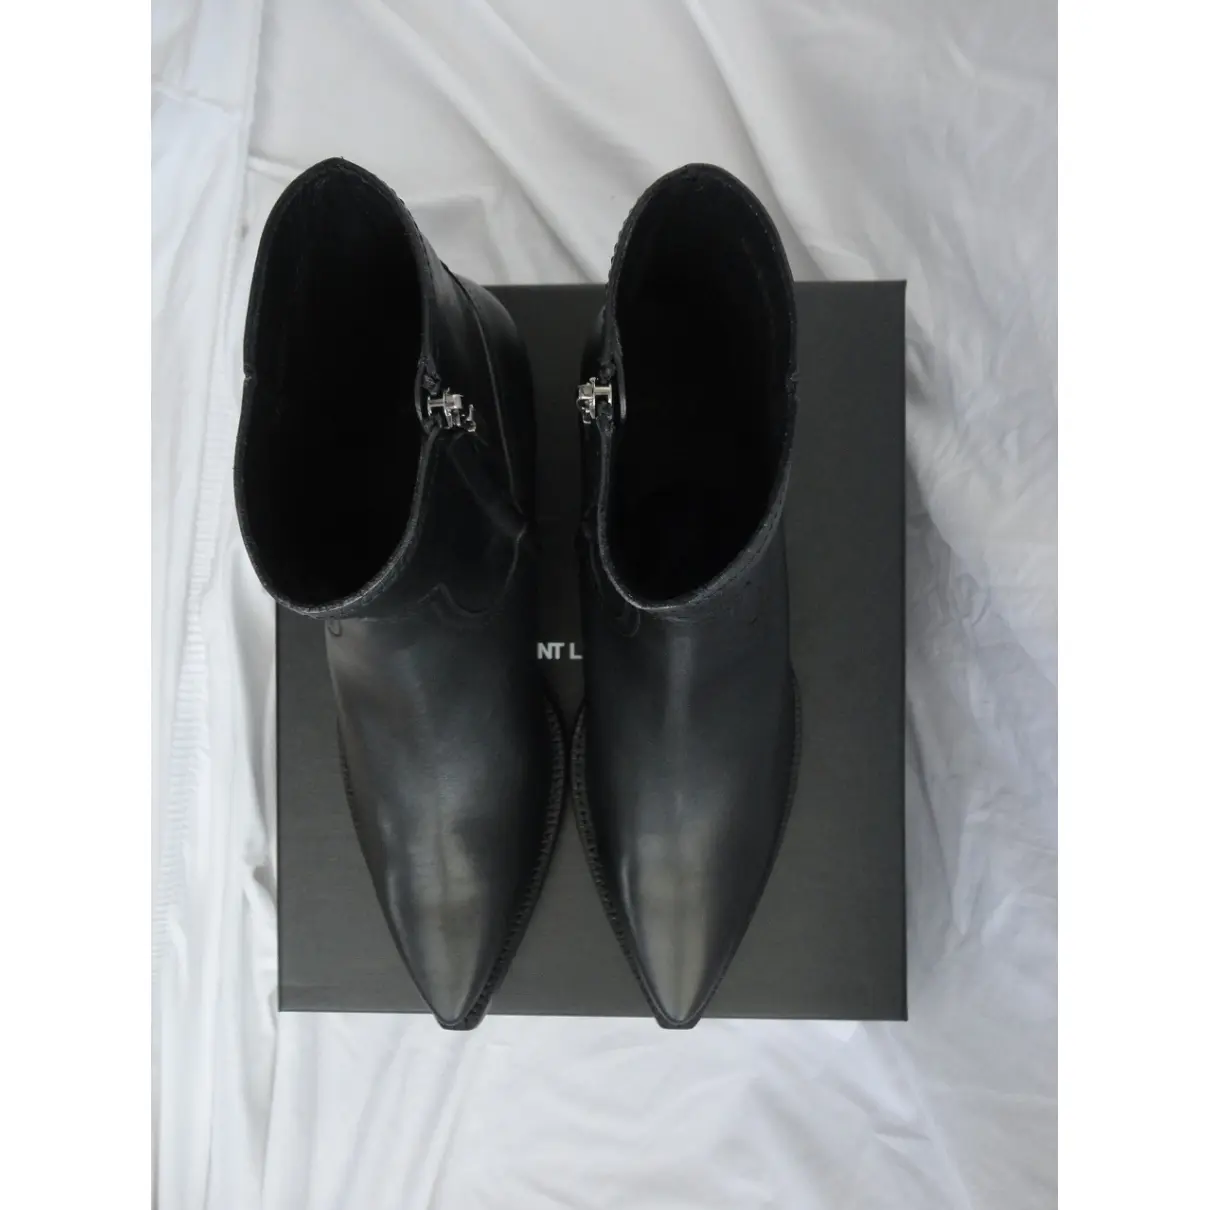 Buy Saint Laurent Lukas leather boots online